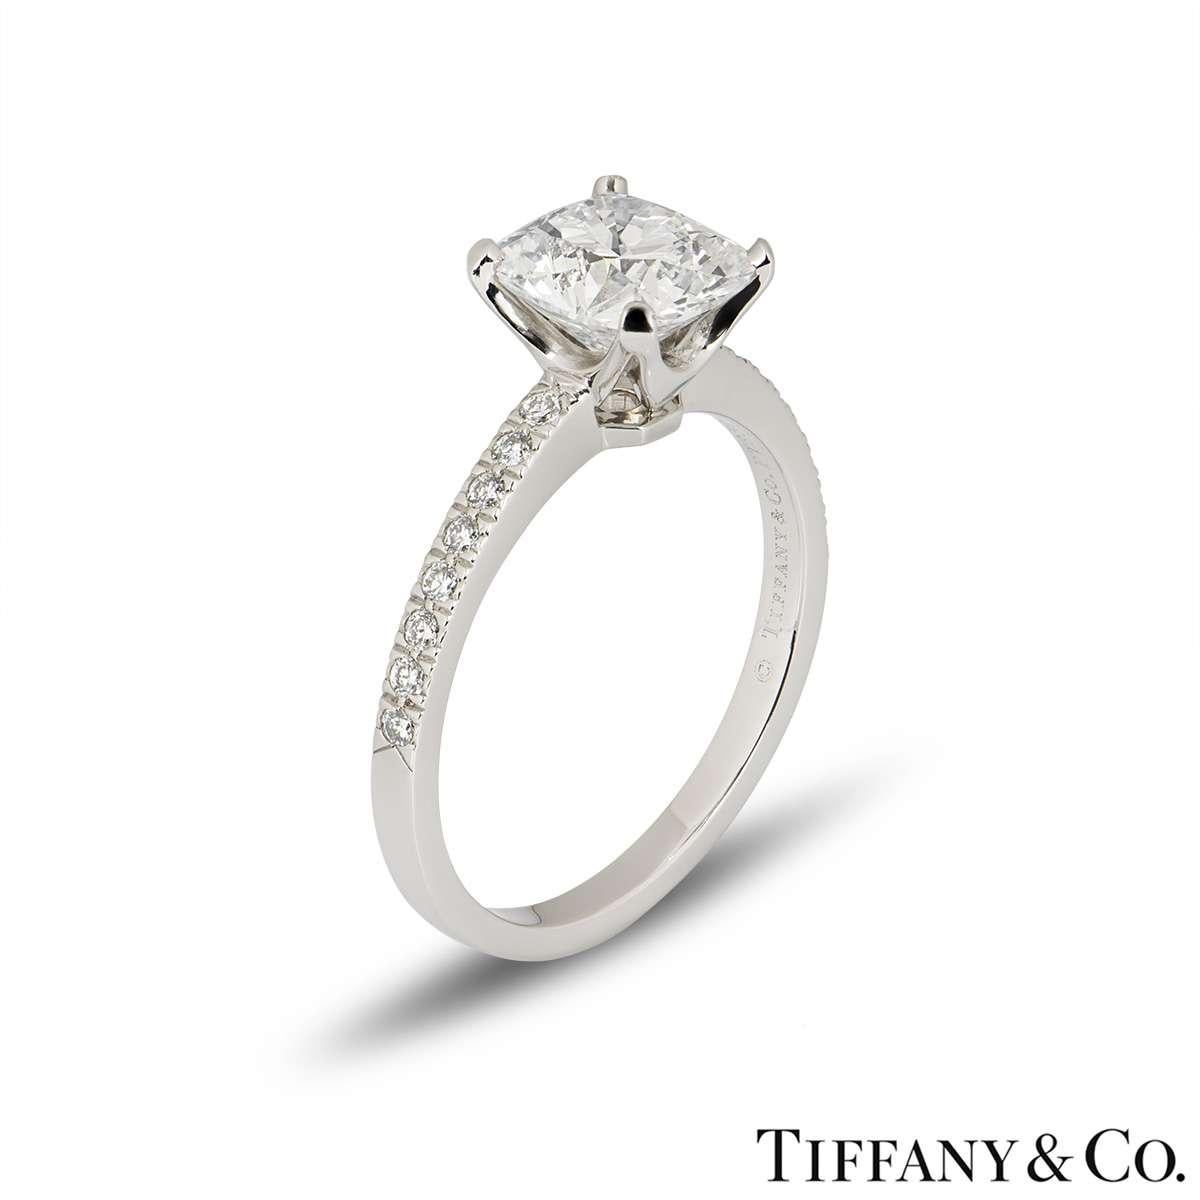 Une bague en diamant en platine qui attire l'attention, issue de la collection Novo de Tiffany & Co. La bague est sertie au centre d'un diamant taille coussin de 2,22 ct dans une monture classique à 4 griffes. Le diamant est de couleur G et de